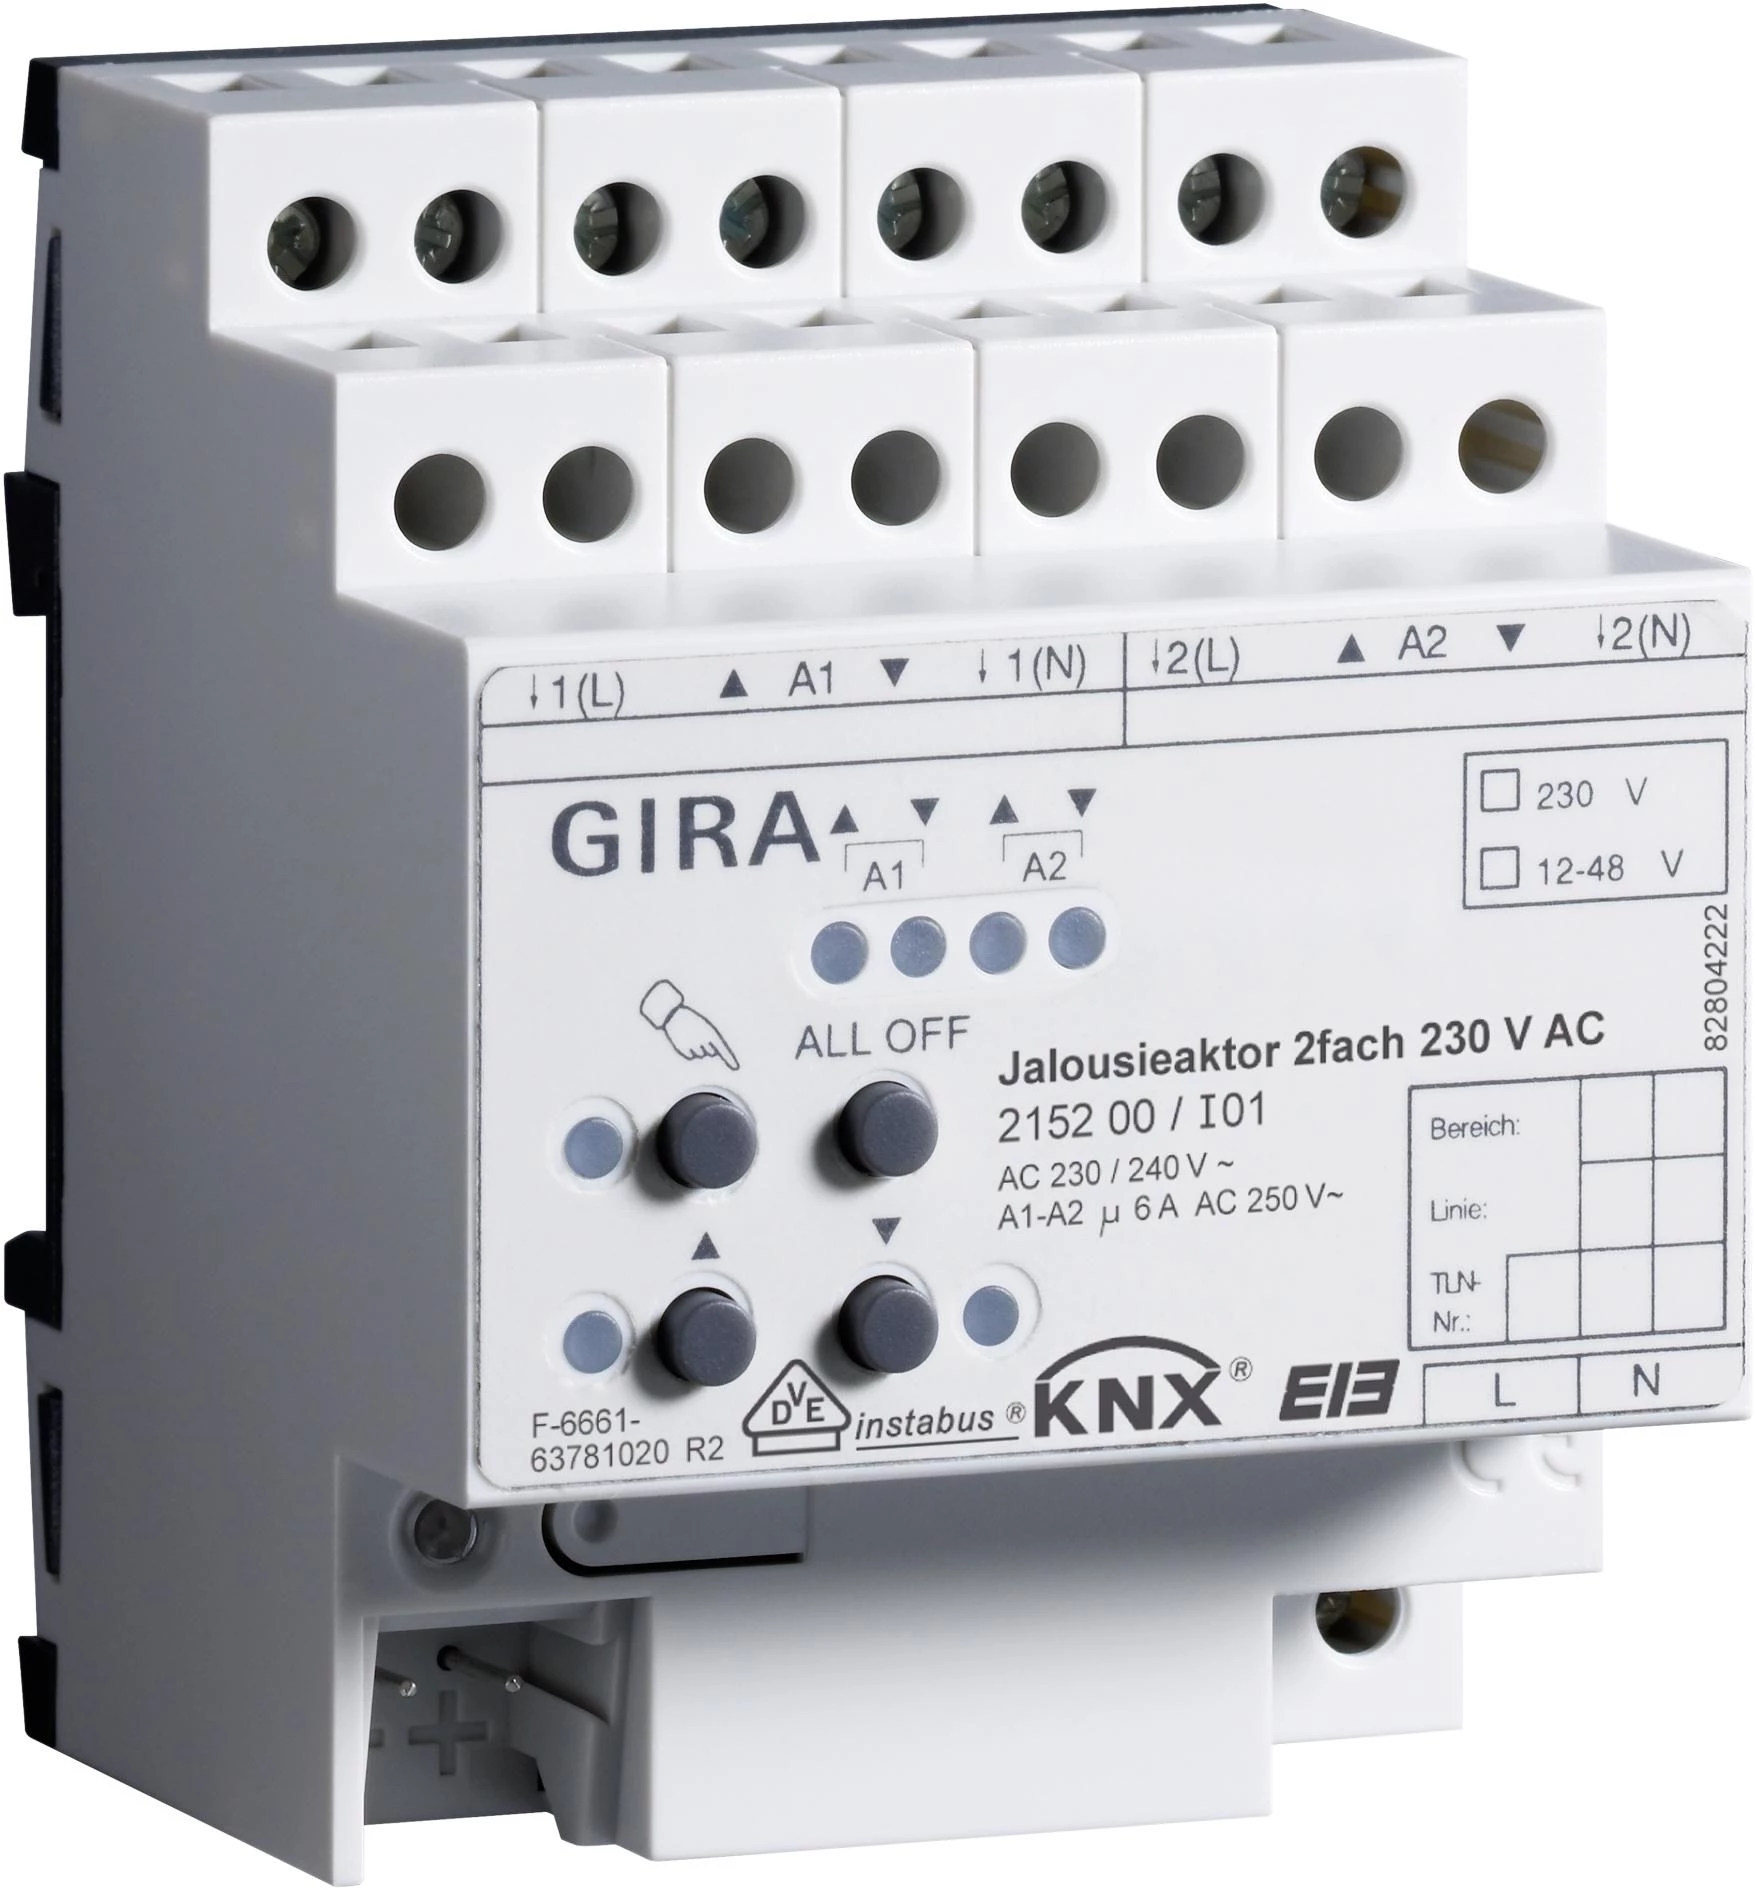  артикул 215200 название Gira KNX Актор для жалюзи 2-канальный 230В АС KNX/EIB REG